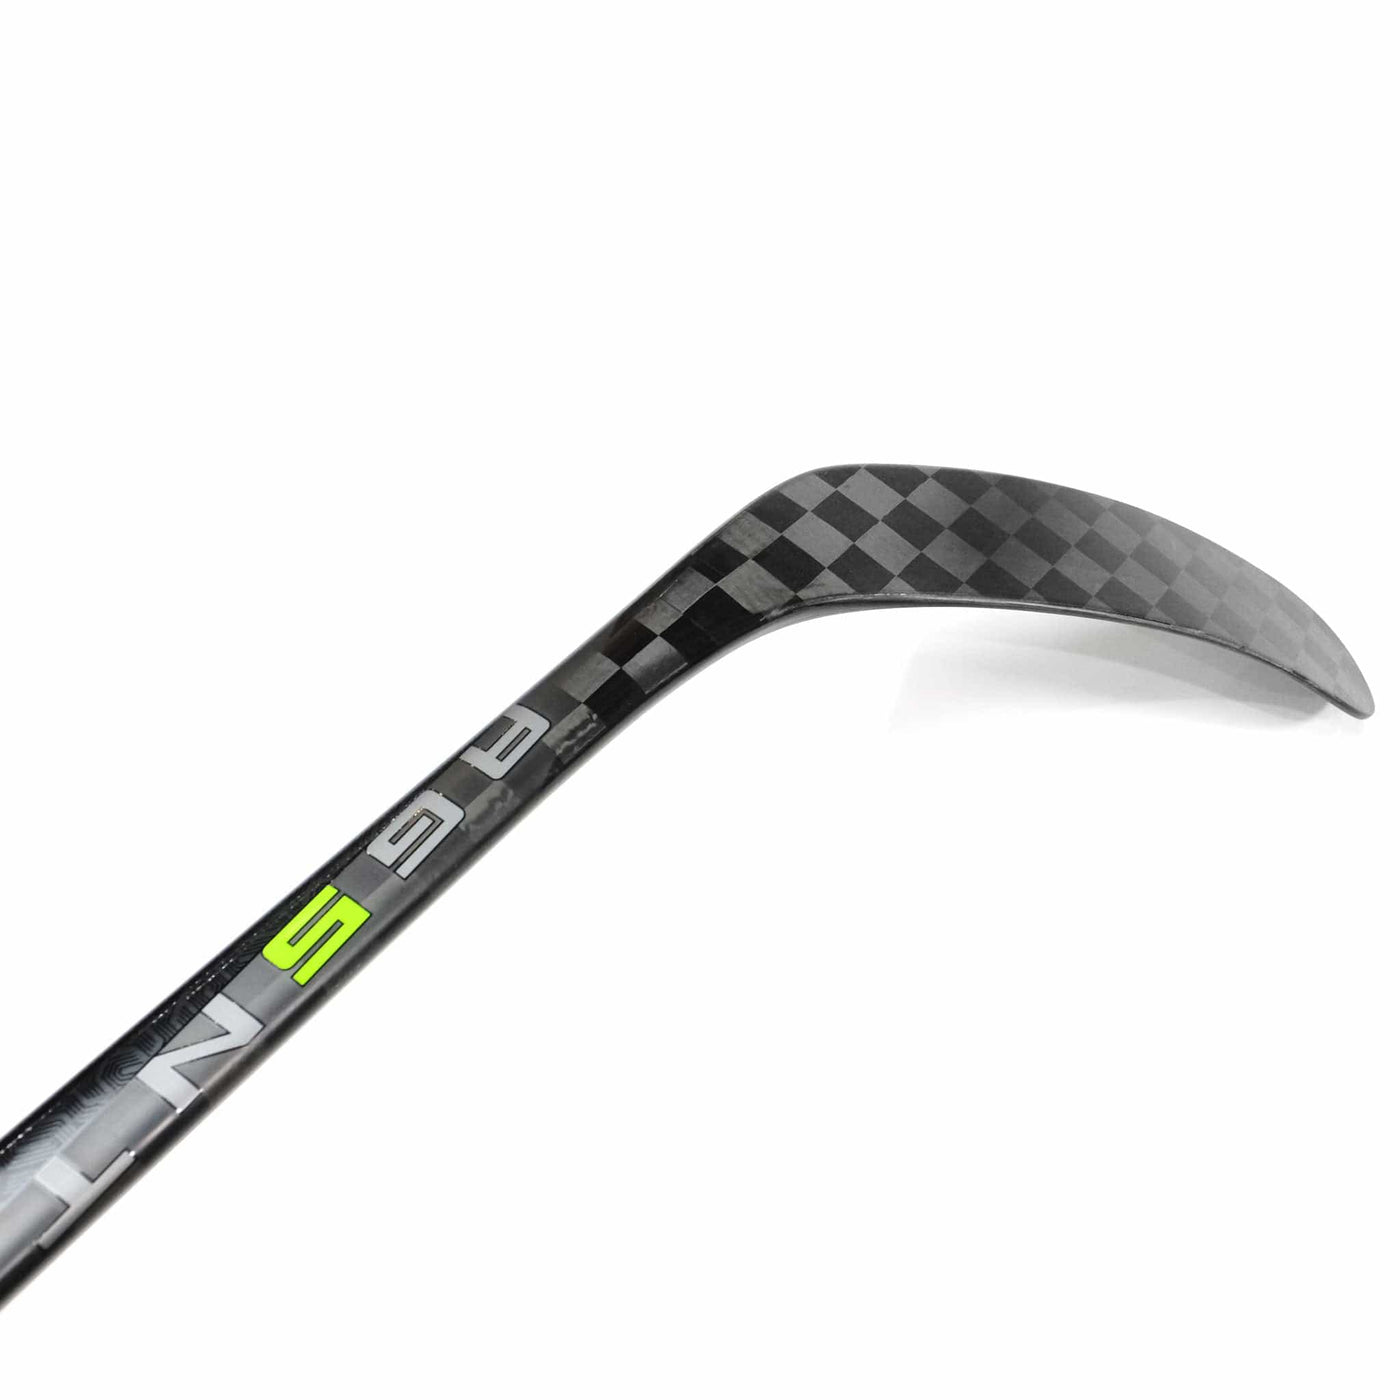 Bauer Vapor HyperLite Junior Hockey Stick - 50 Flex